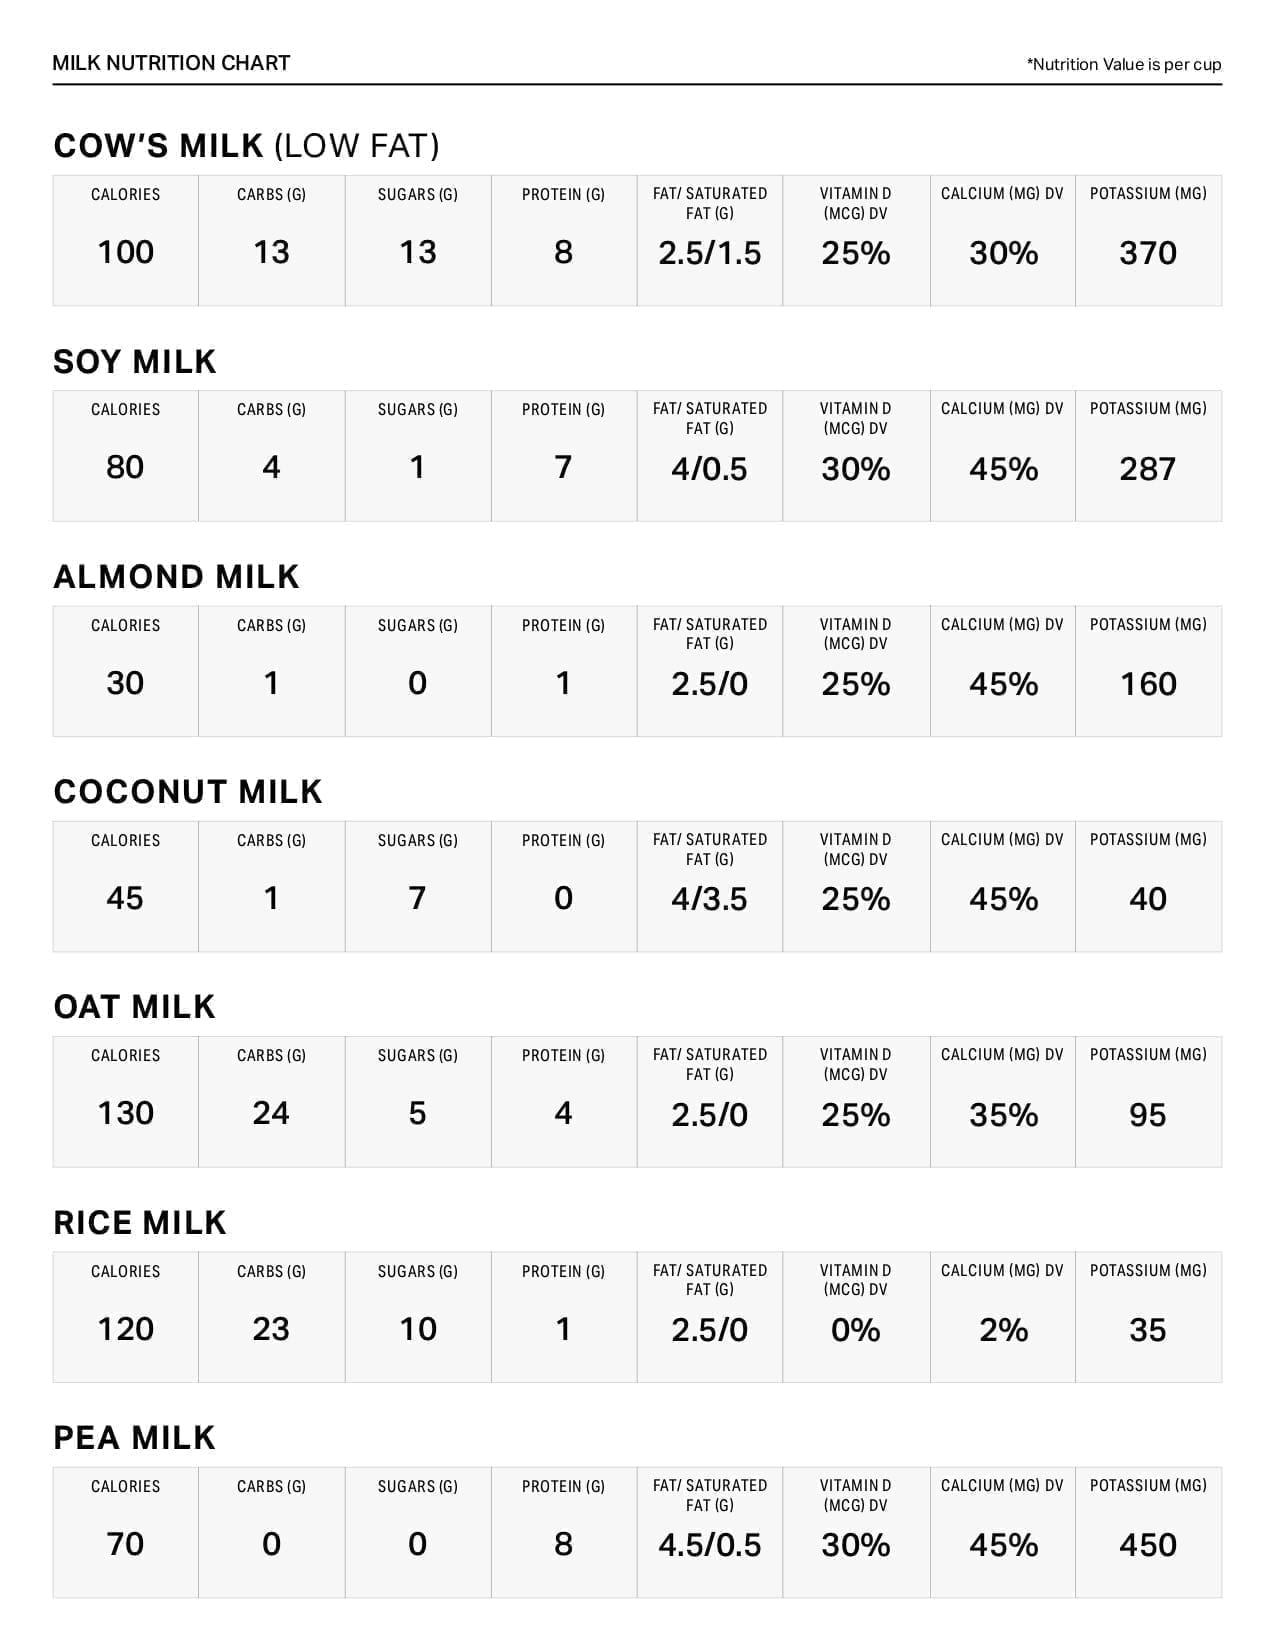 Bean Nutrition Comparison Chart